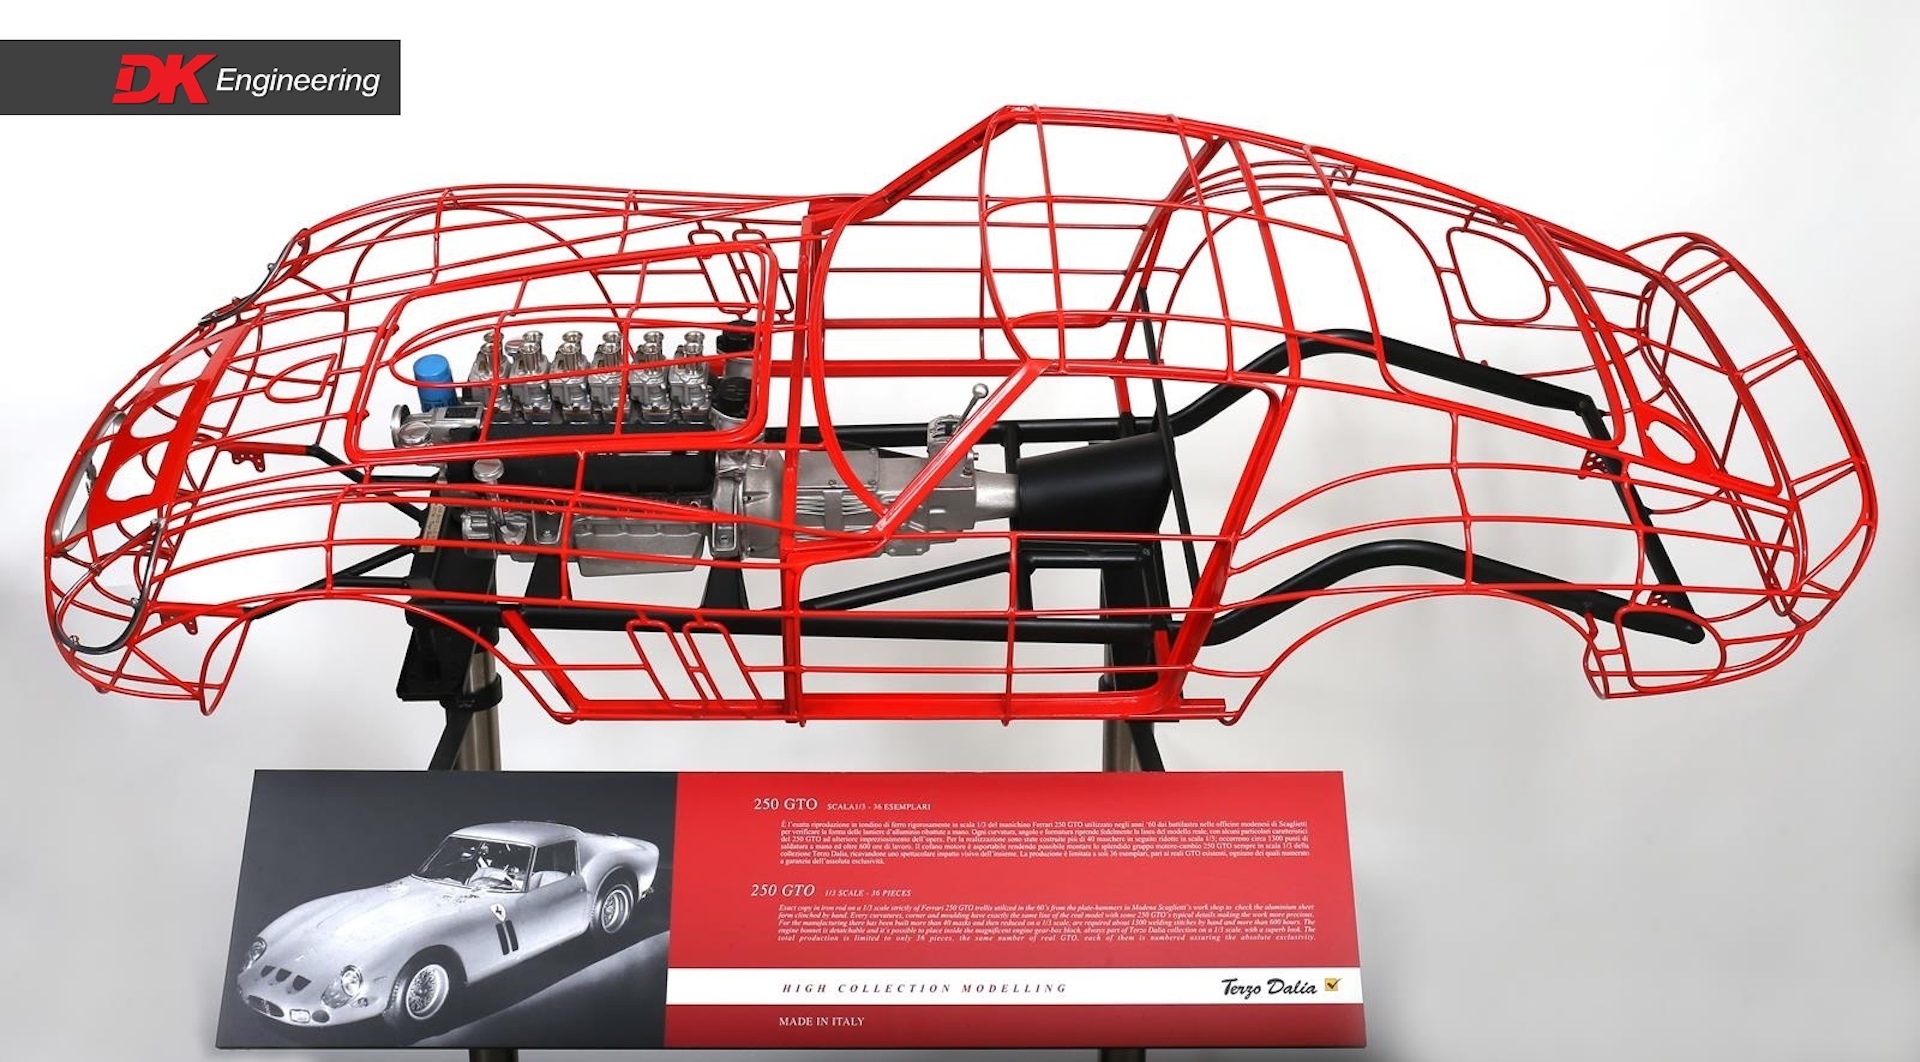 Thú chơi mô hình động cơ, khung xe Ferrari giá ngang xe Toyota, Ford phổ thông của giới nhà giàu - Ảnh 5.